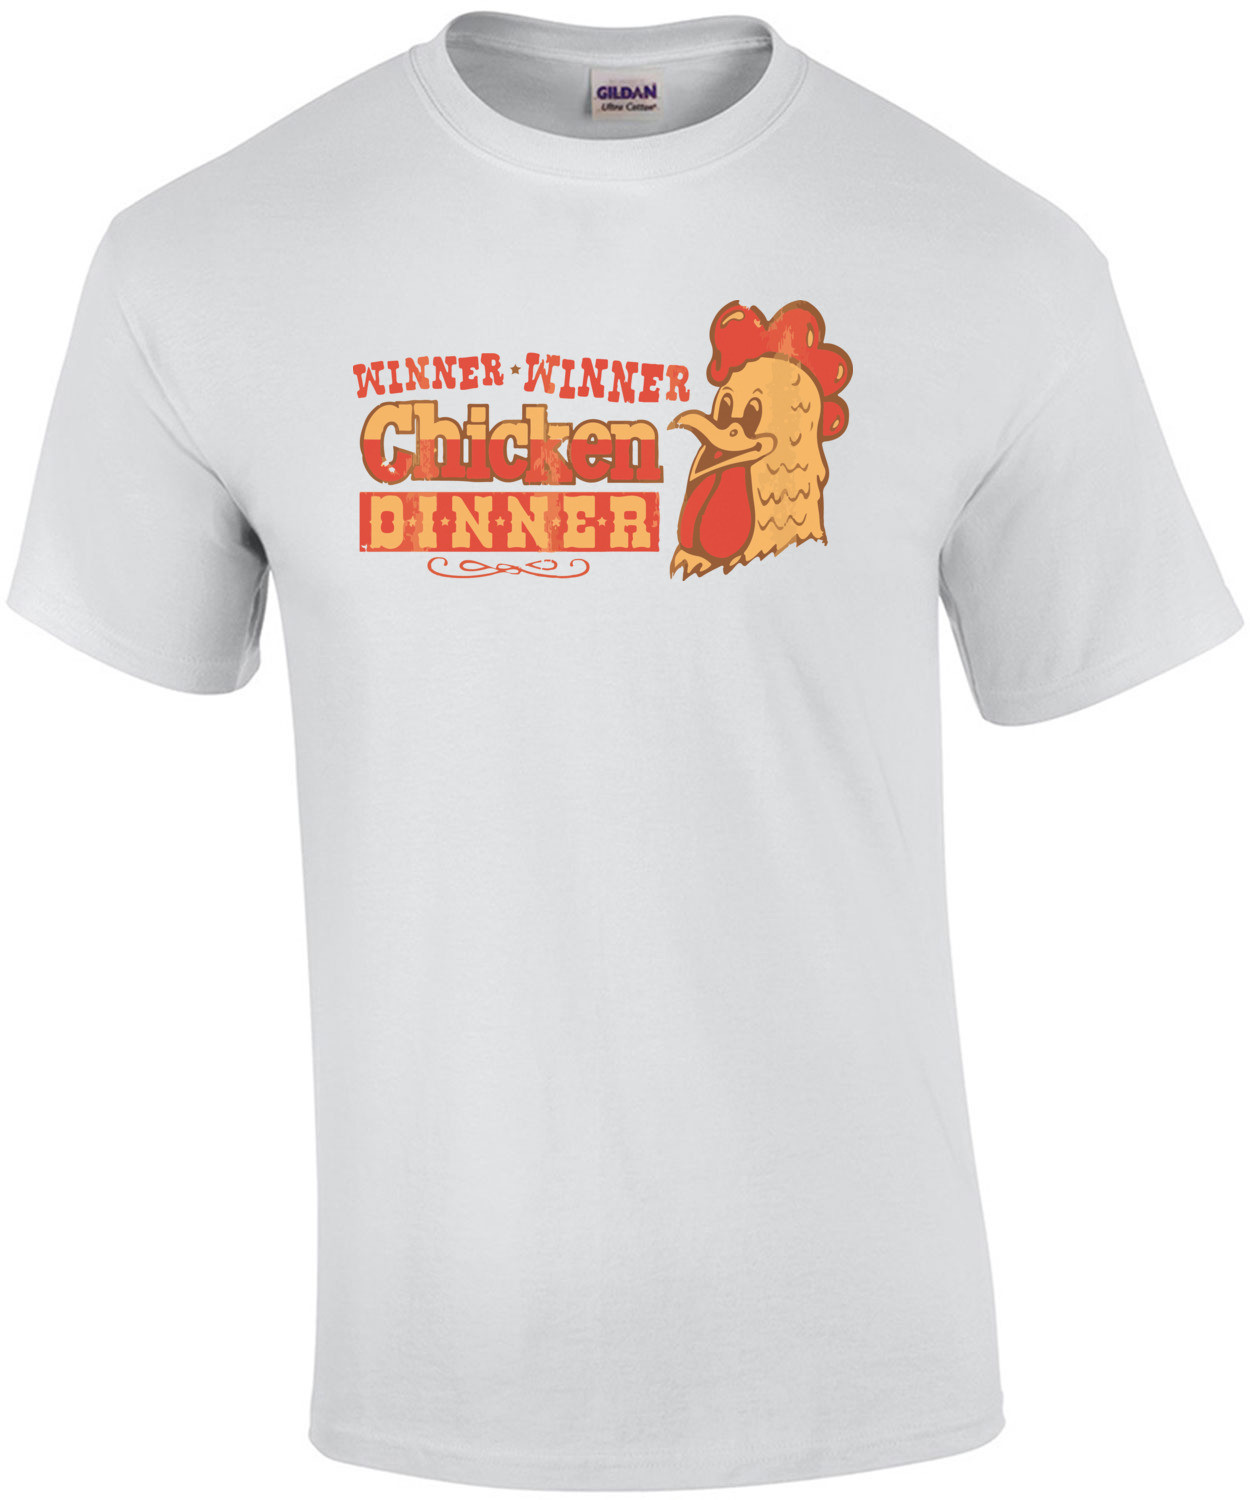 Winner Winner Chicken Dinner - Poker T-Shirt